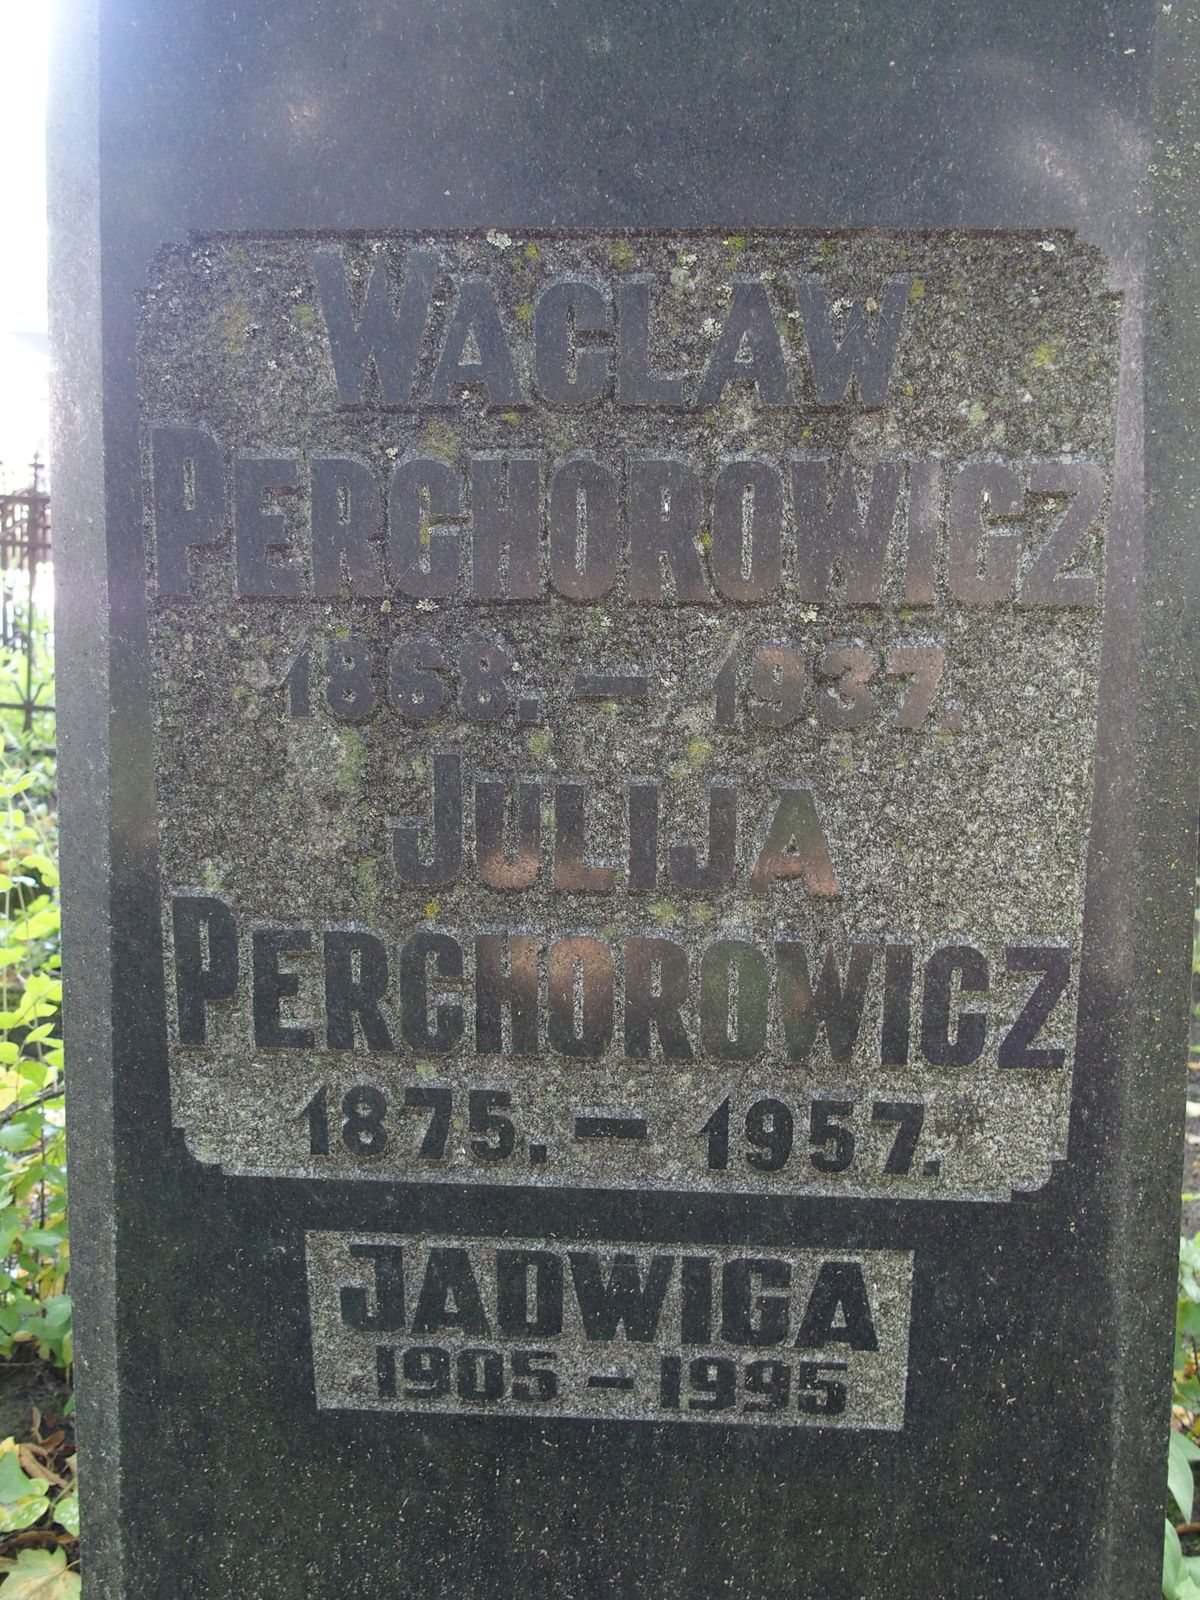 Napis z nagrobka Jadwigi Perchorowicz, Julii Perchorowicz i Wacława Perchorowicza, cmentarz św. Michała w Rydze, stan z 2021 r.